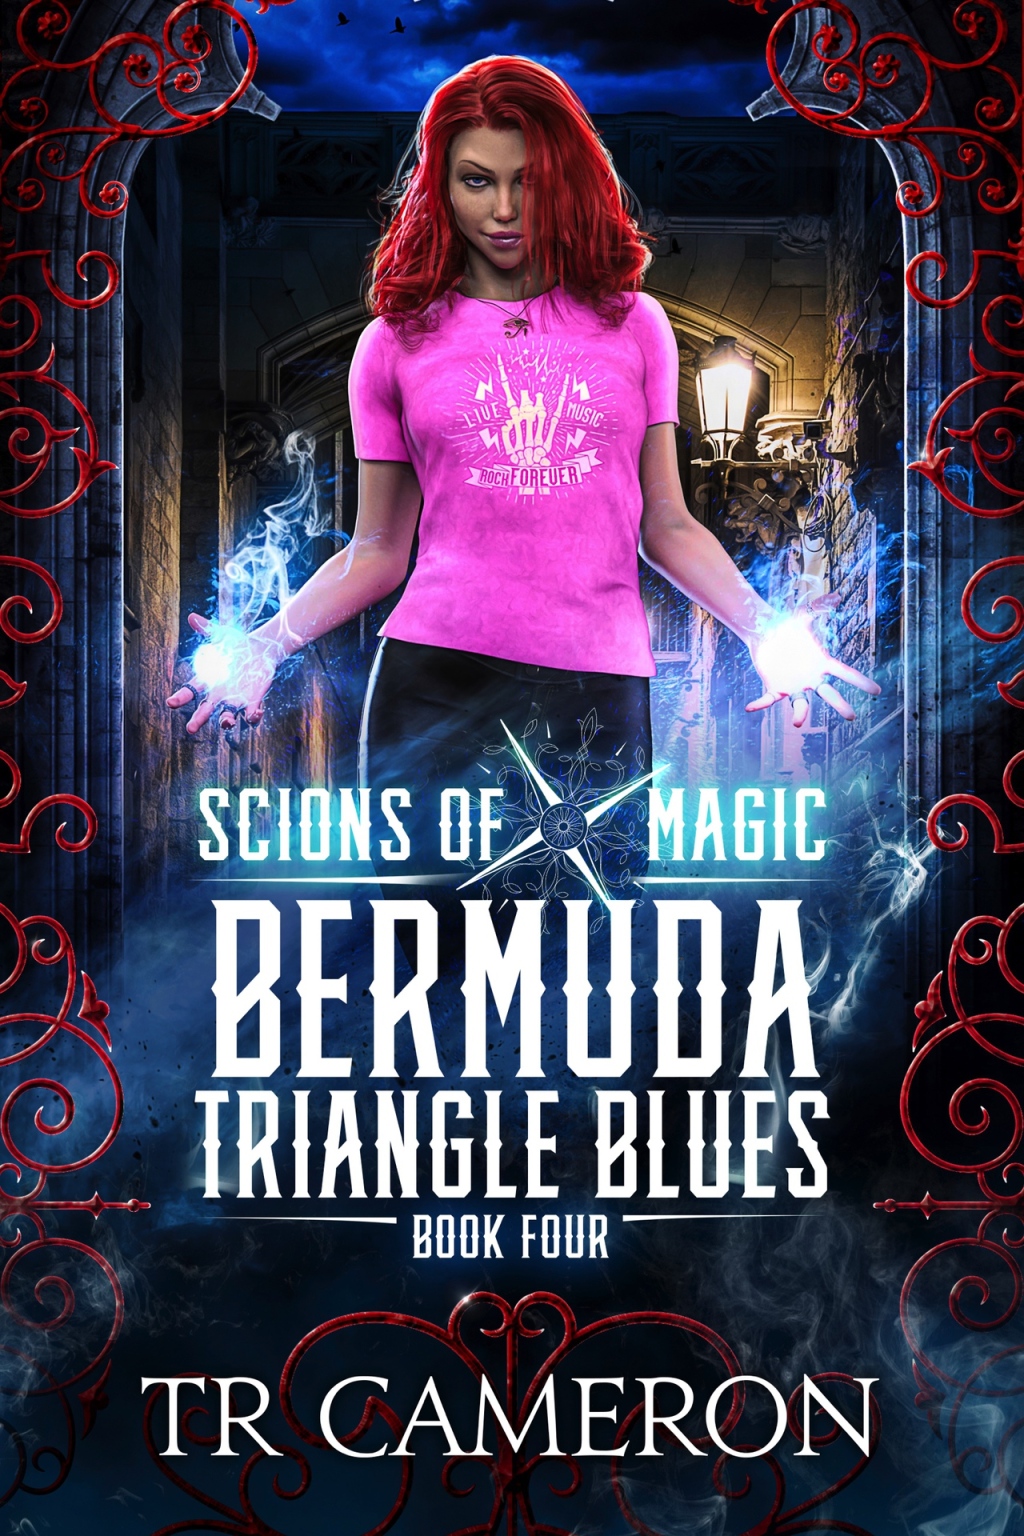 Bermuda Triangle Blues – Pretty average urban fantasy.